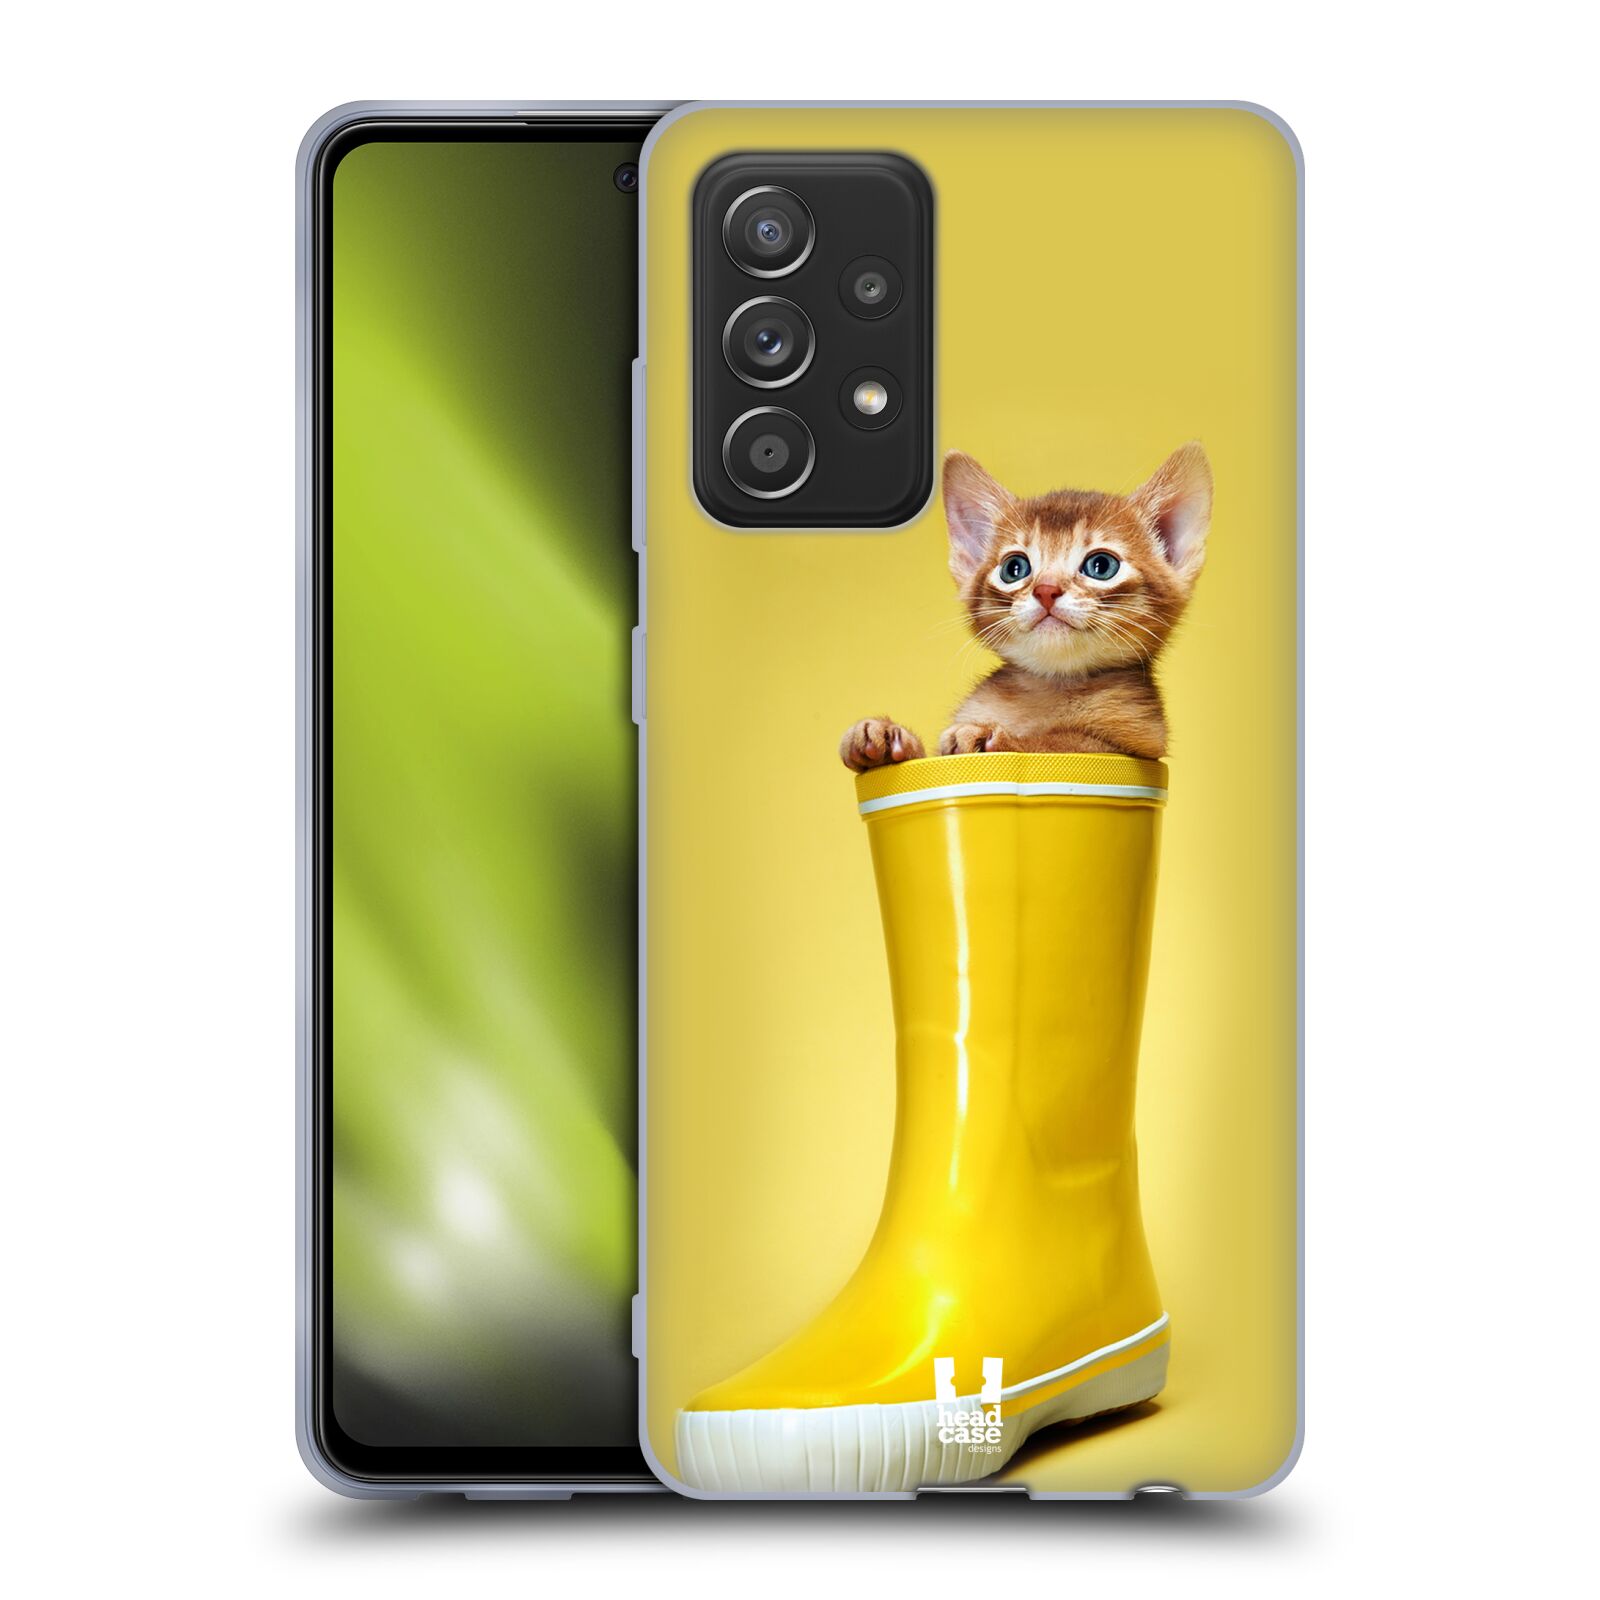 Plastový obal HEAD CASE na mobil Samsung Galaxy A52 / A52 5G / A52s 5G vzor Legrační zvířátka kotě v botě žlutá